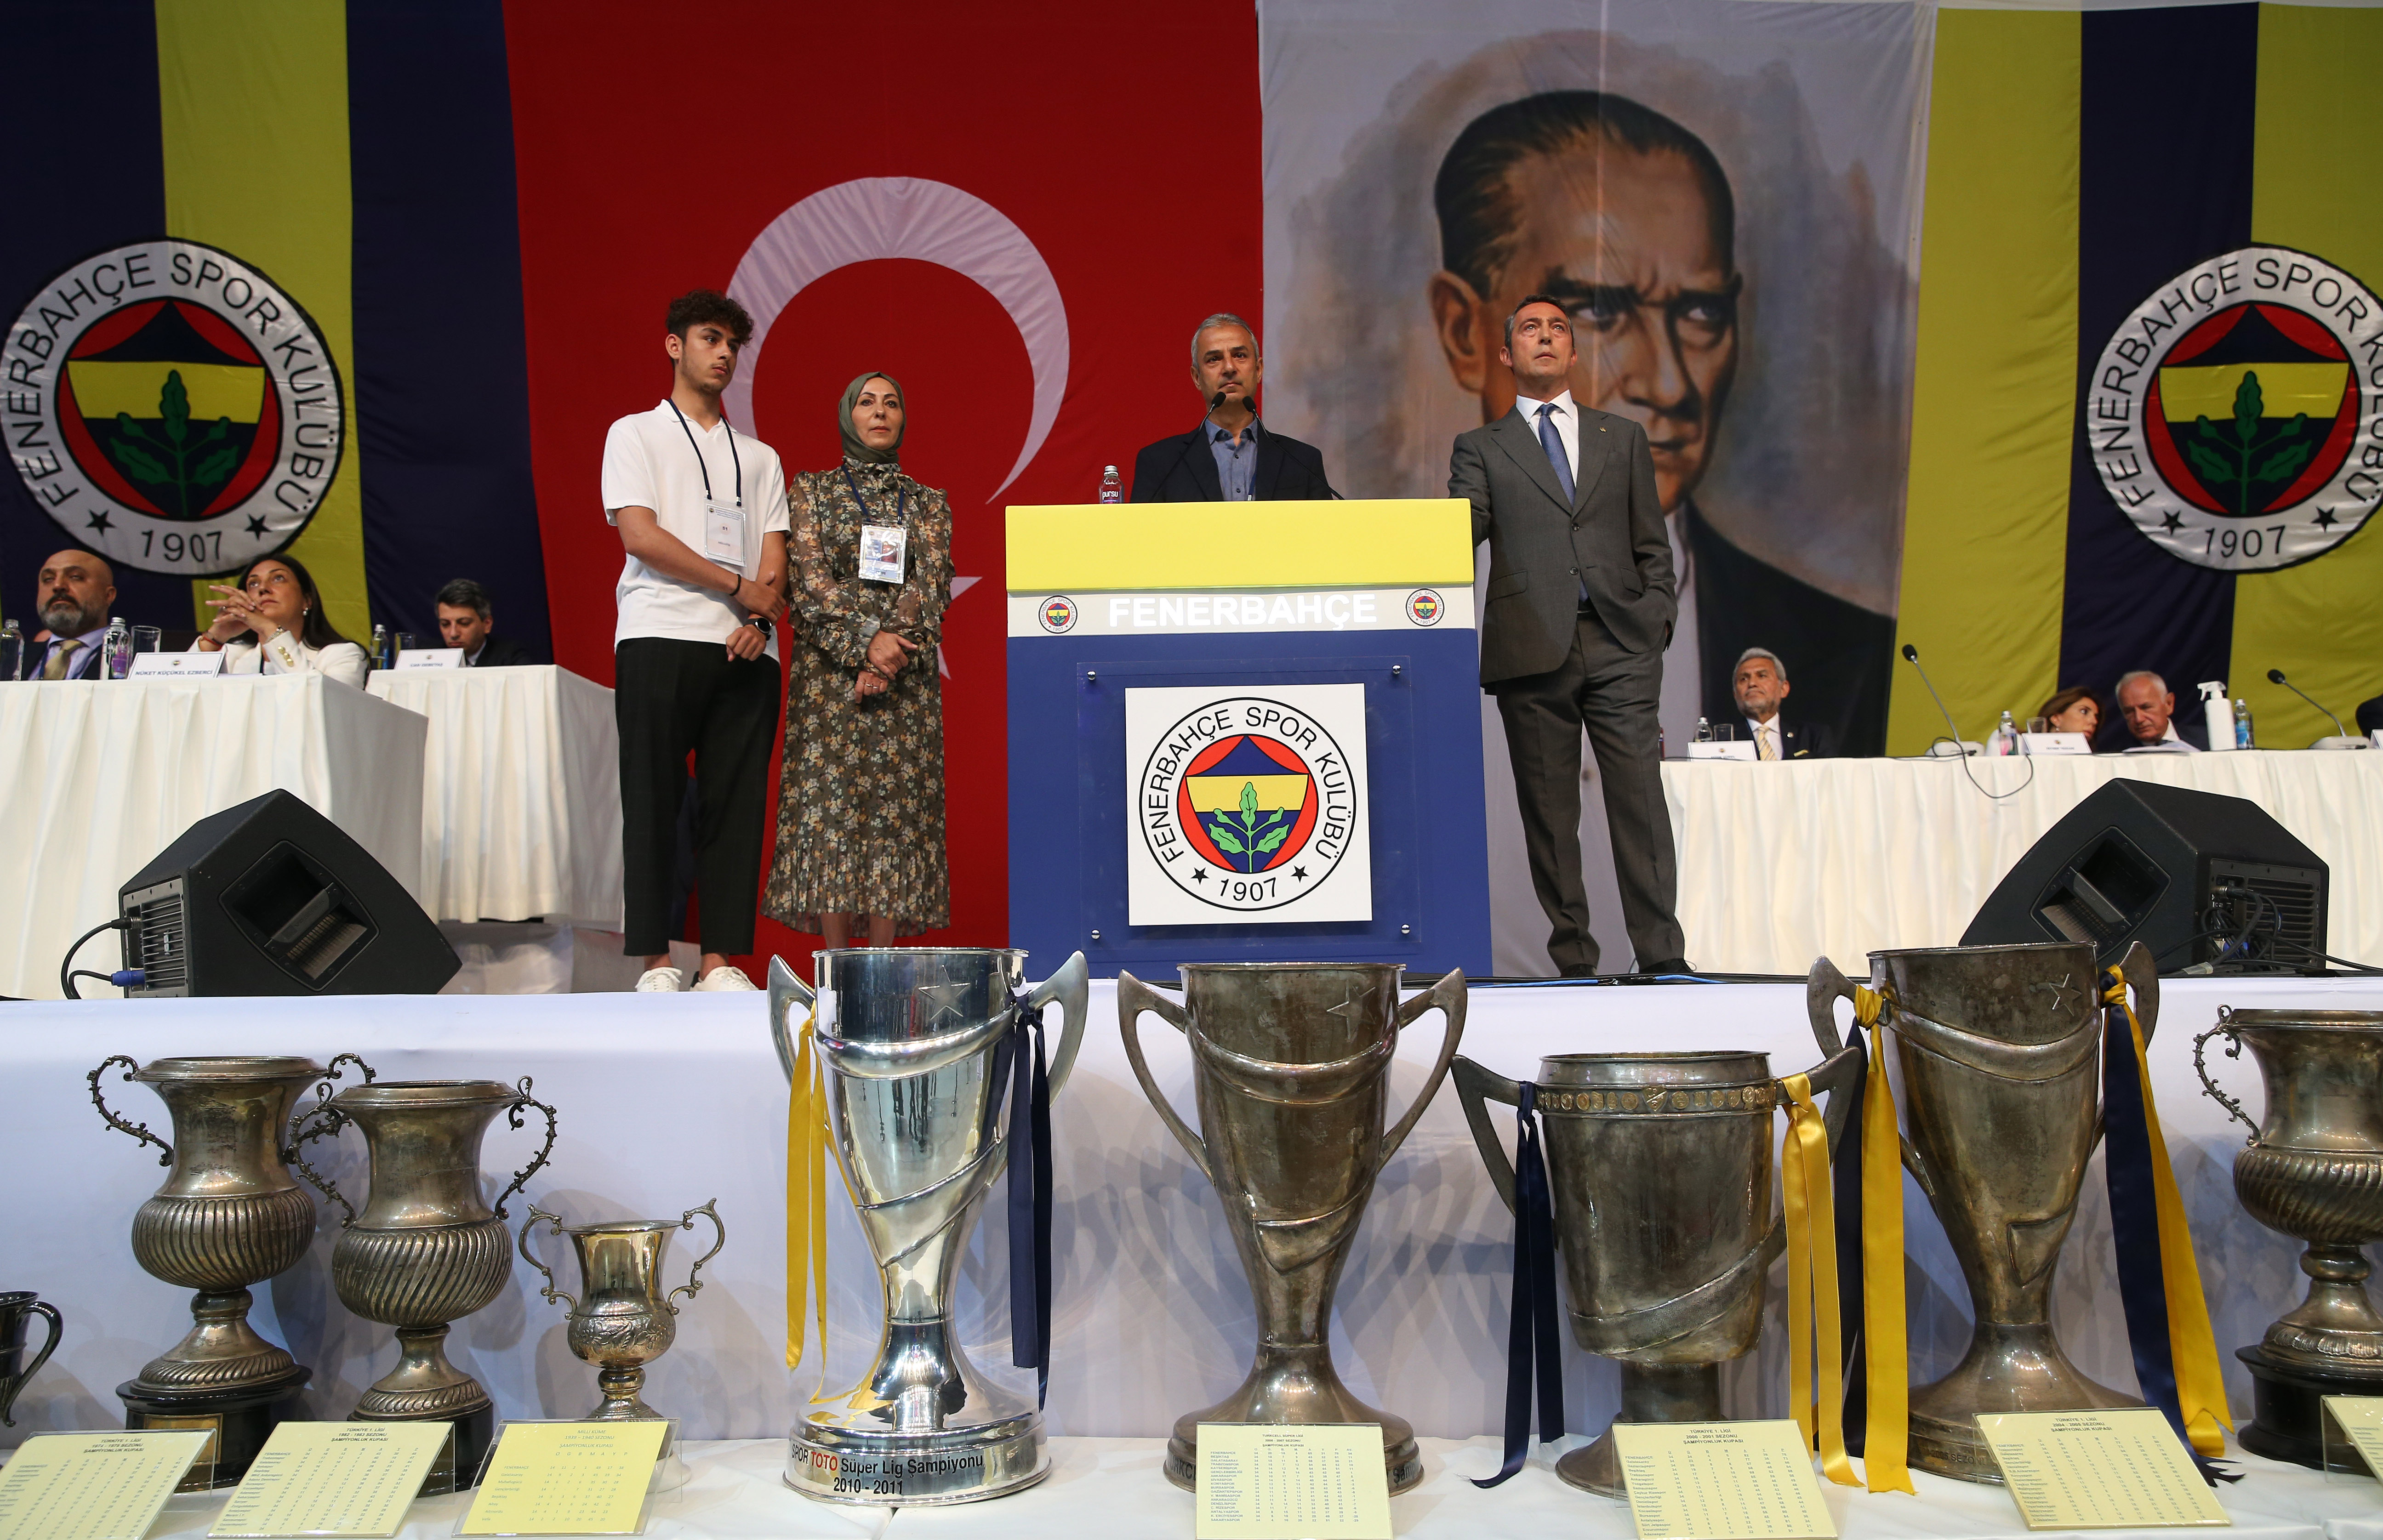 Fenerbahçe'nin 6 milyar 190 milyon lira borcunun olduğu açıklandı